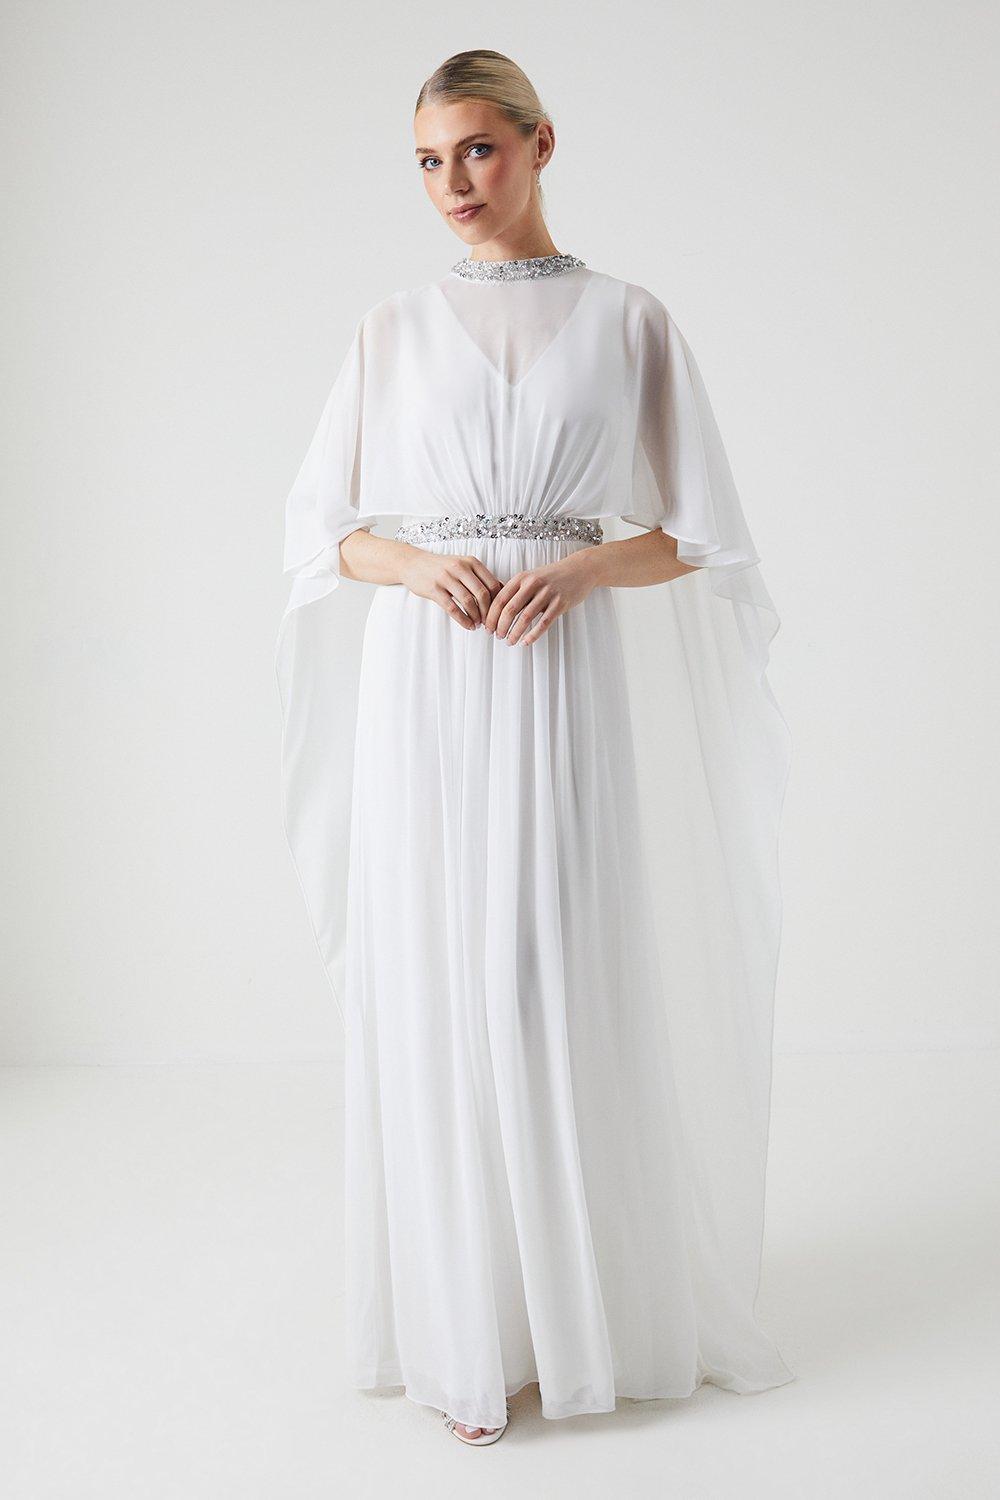 Cape Detail Chiffon Wedding Dress - Ivory